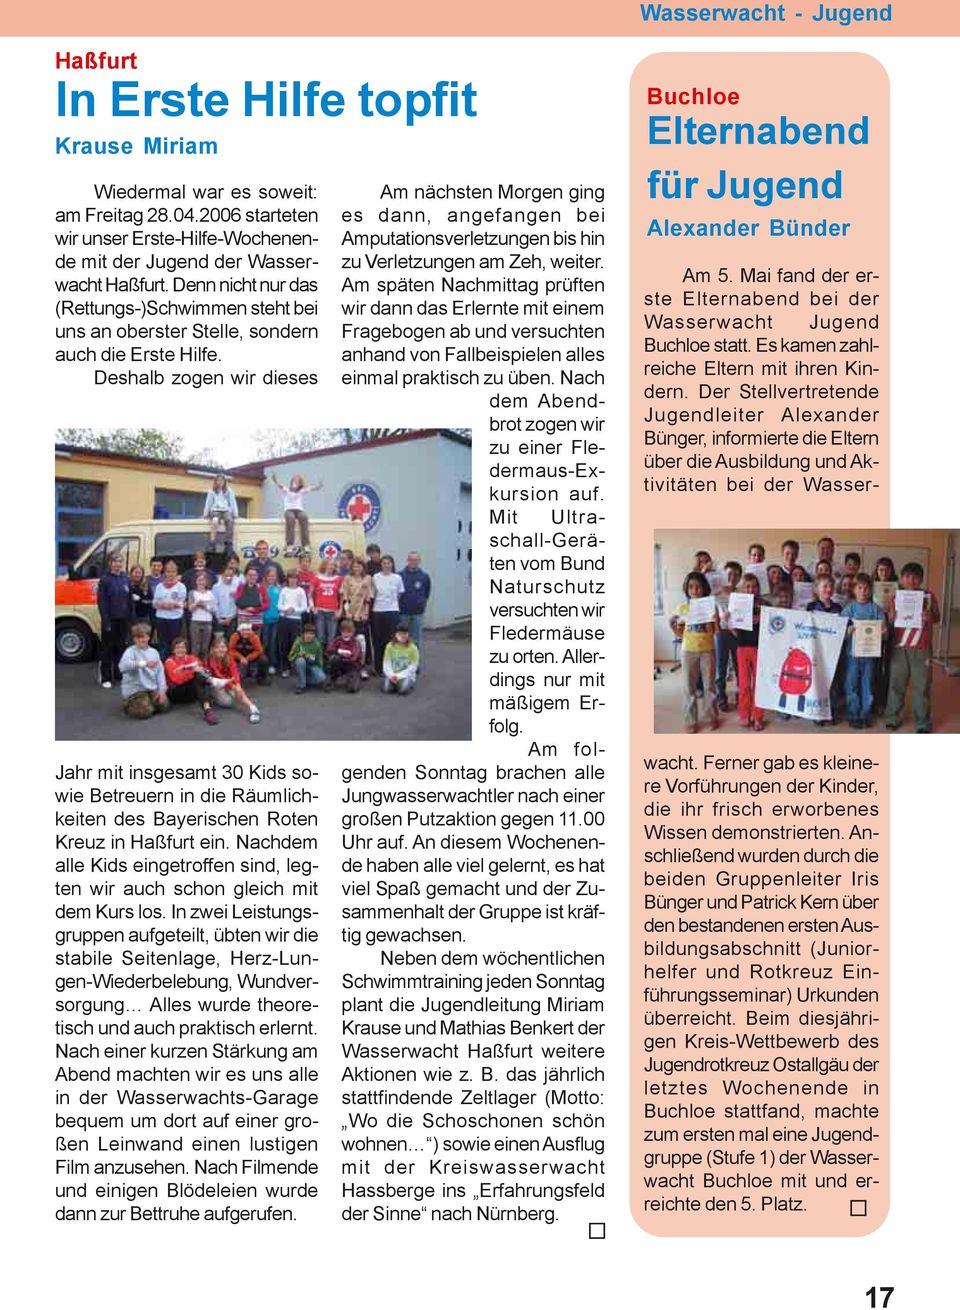 Deshalb zogen wir dieses Jahr mit insgesamt 30 Kids sowie Betreuern in die Räumlichkeiten des Bayerischen Roten Kreuz in Haßfurt ein.